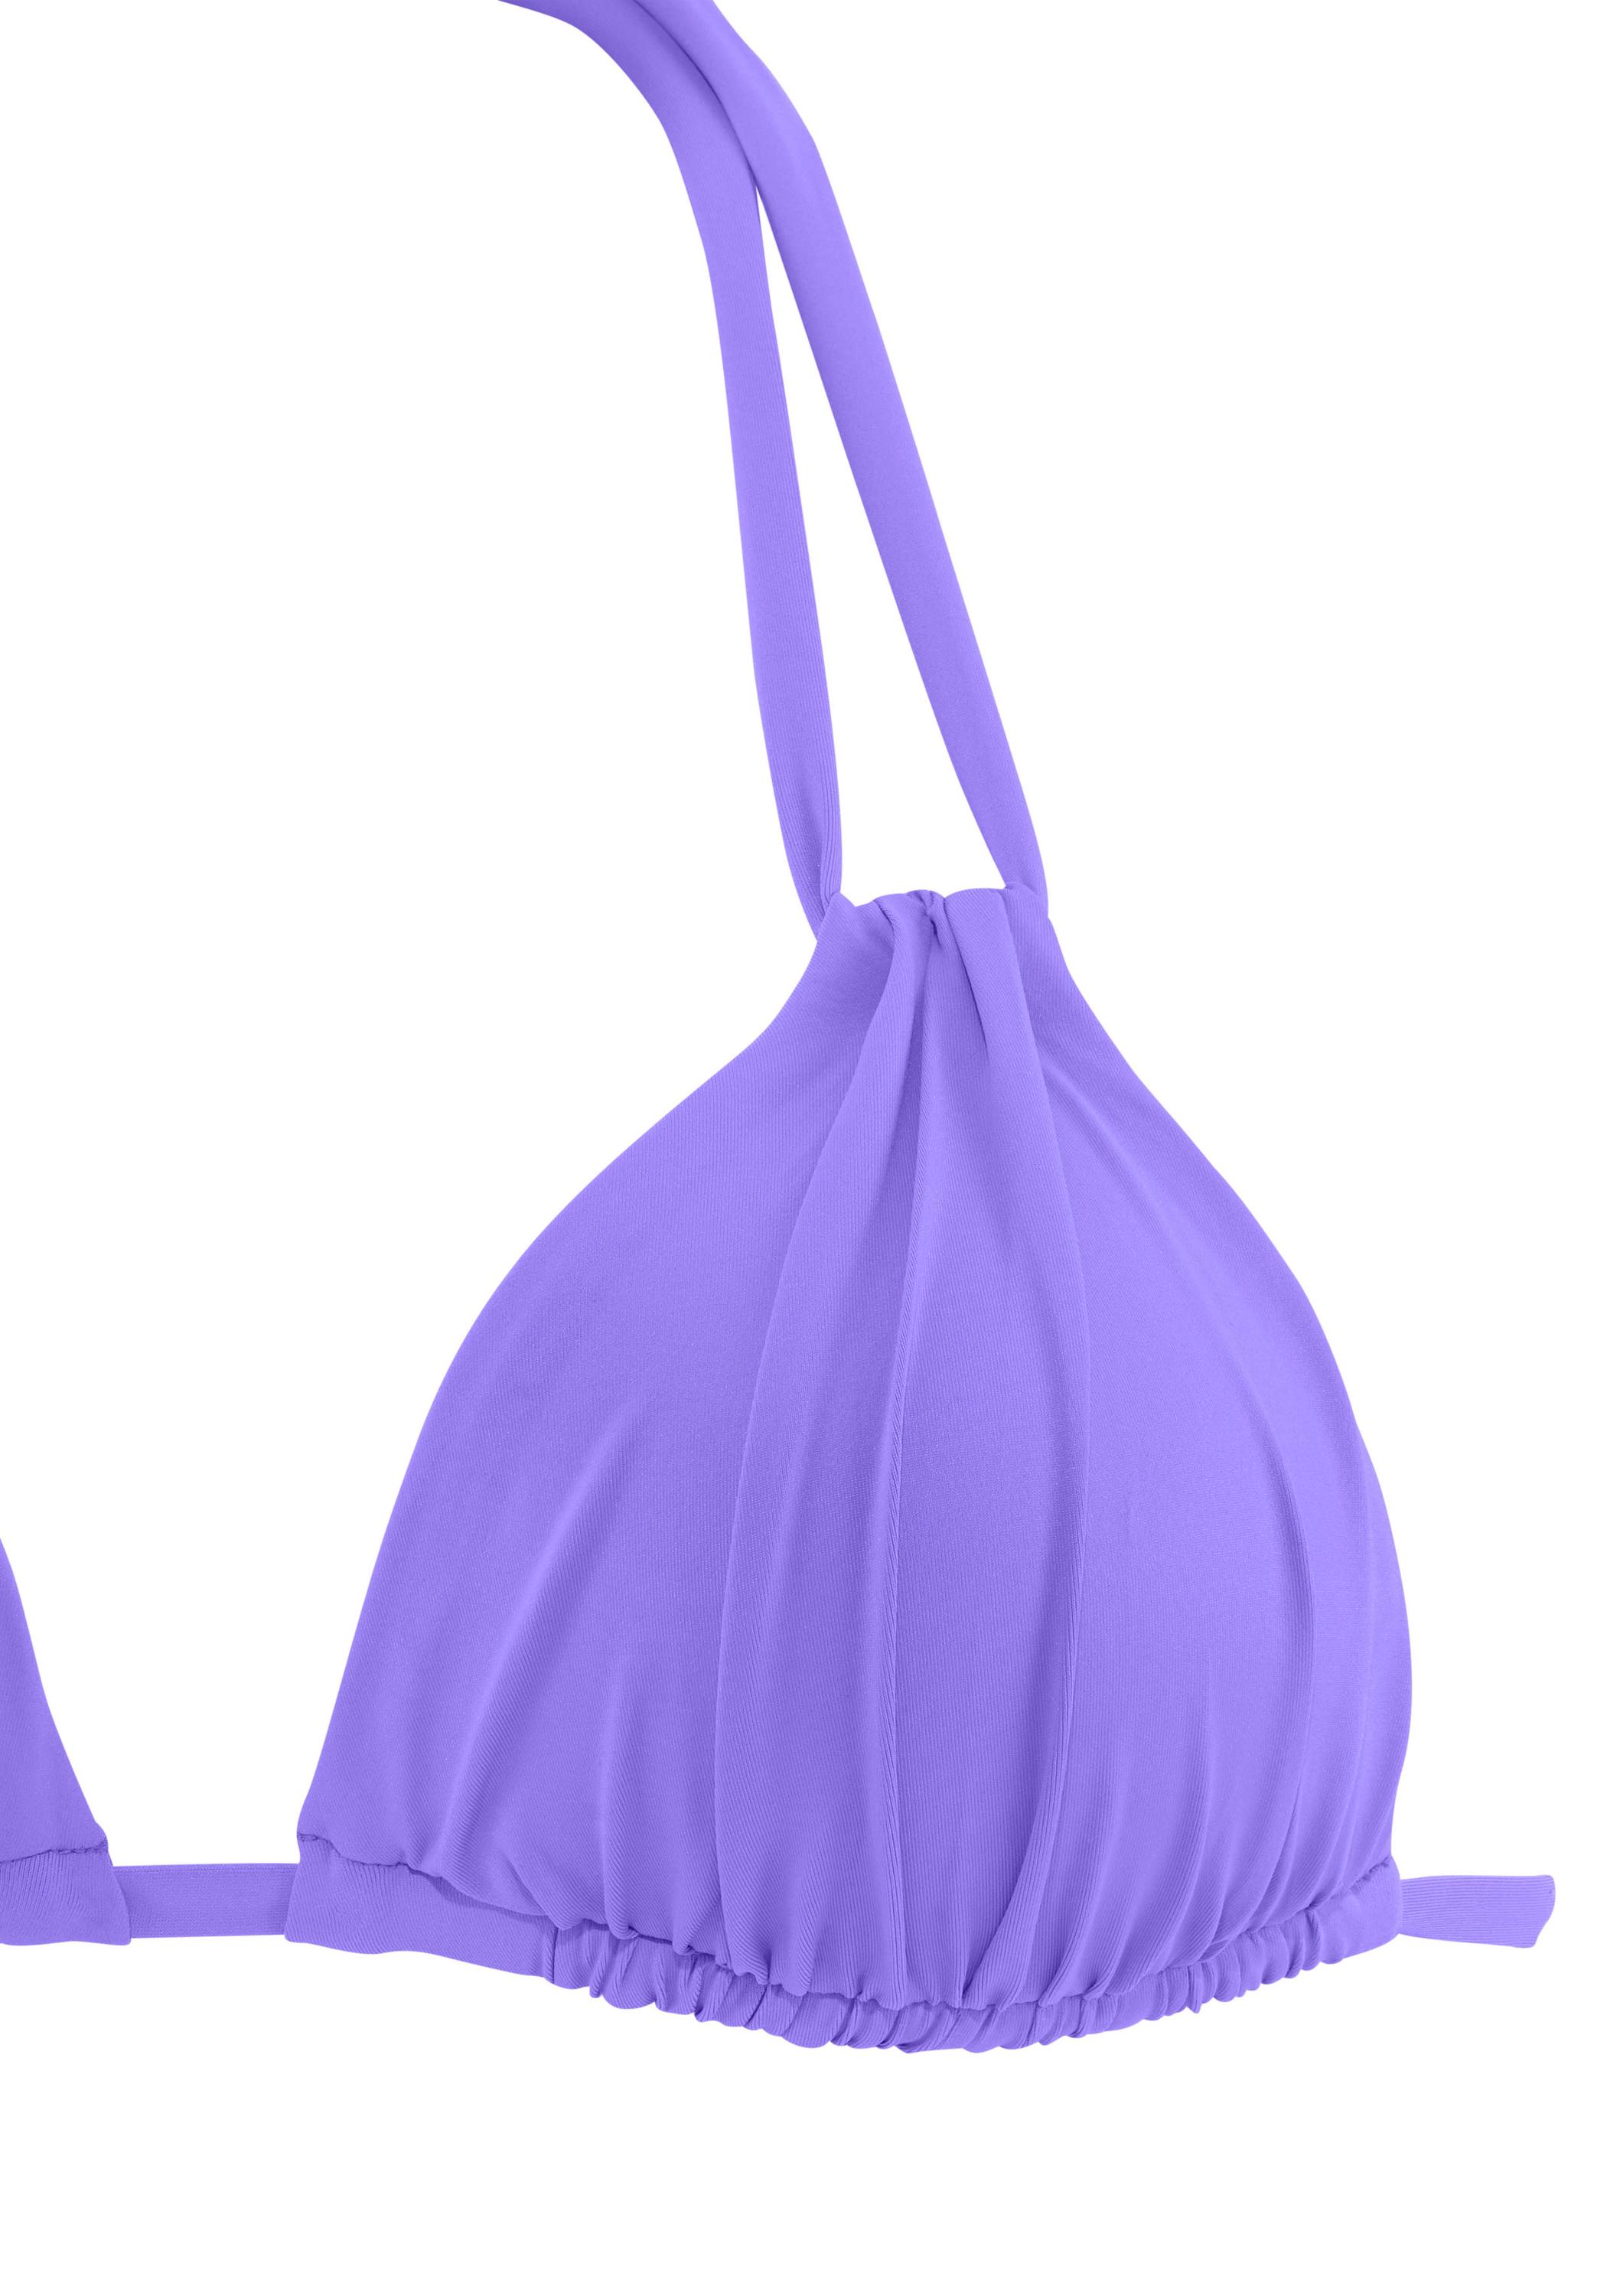 S.OLIVER Bikini Oberteil Damen lila im Online von SportScheck Shop kaufen